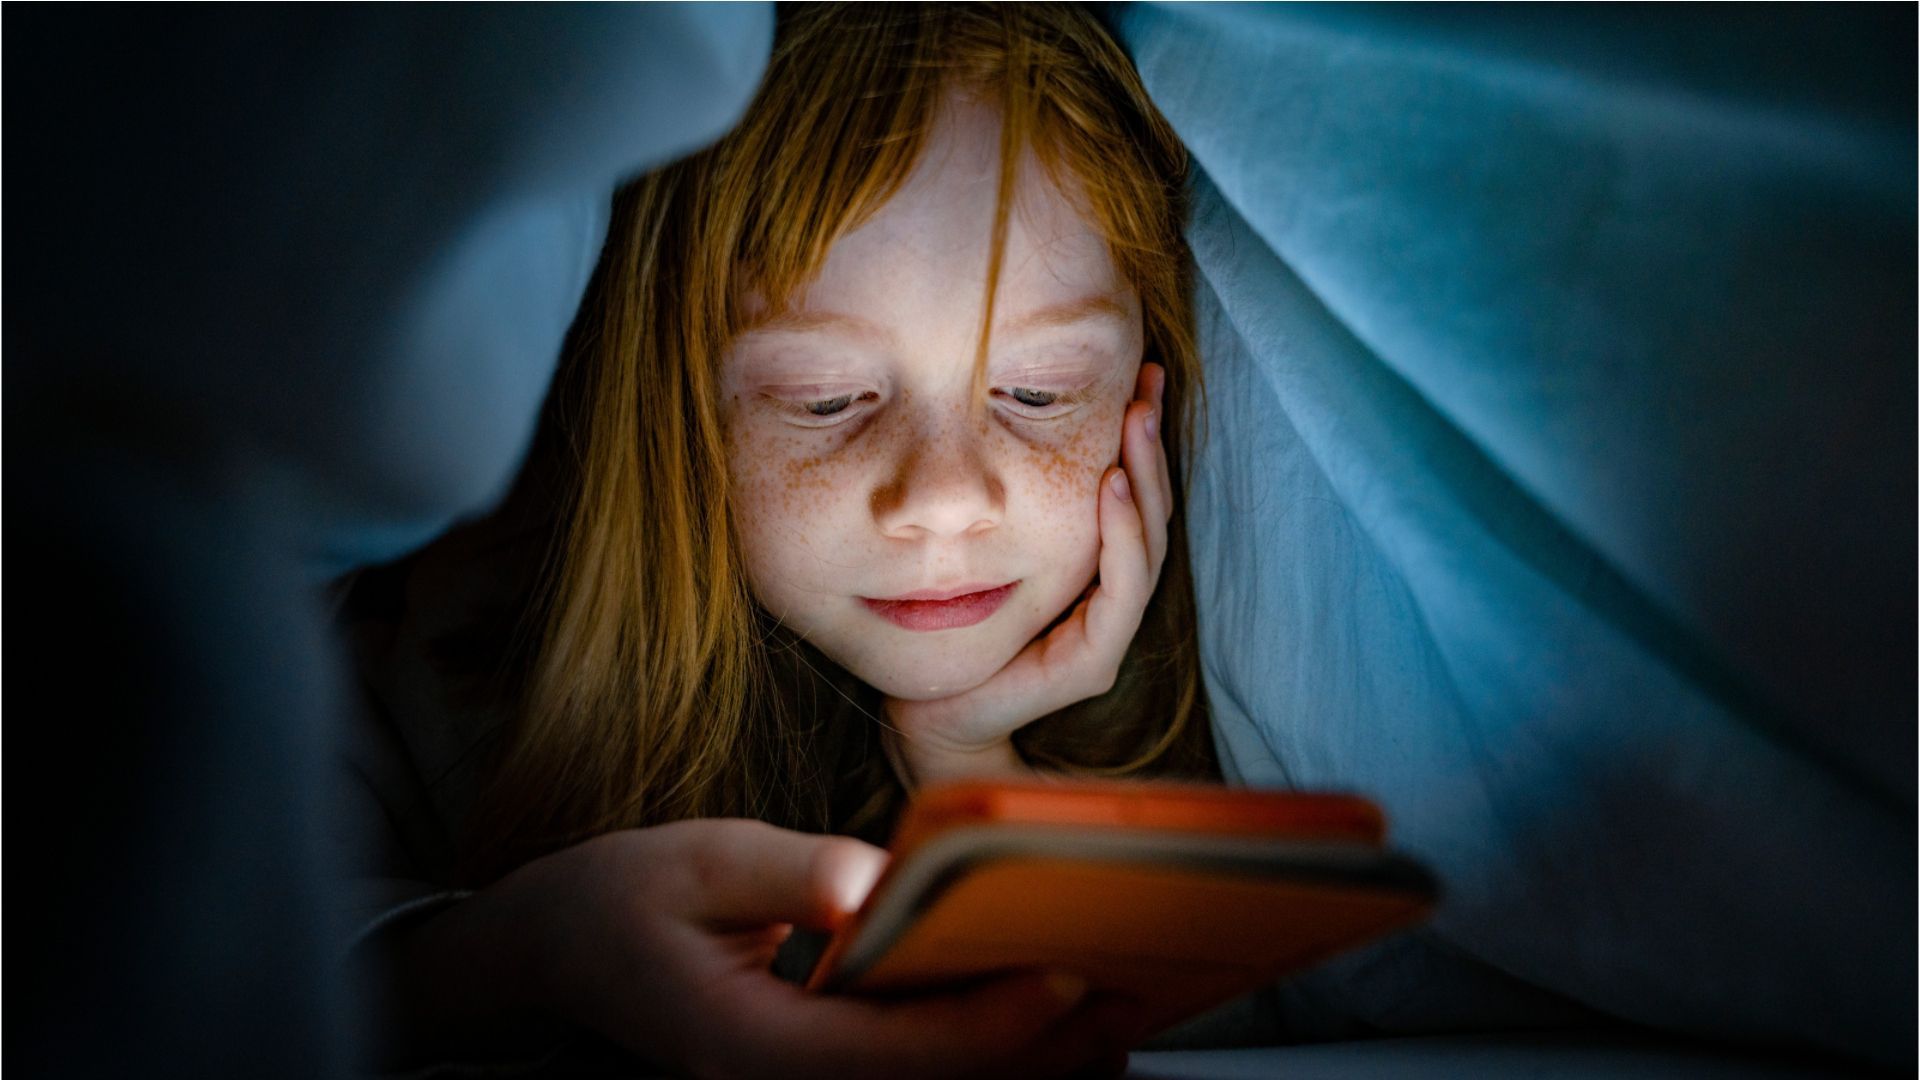 Abendliche Nutzung von Smartphone und Co. schadet dem Kinderschlaf